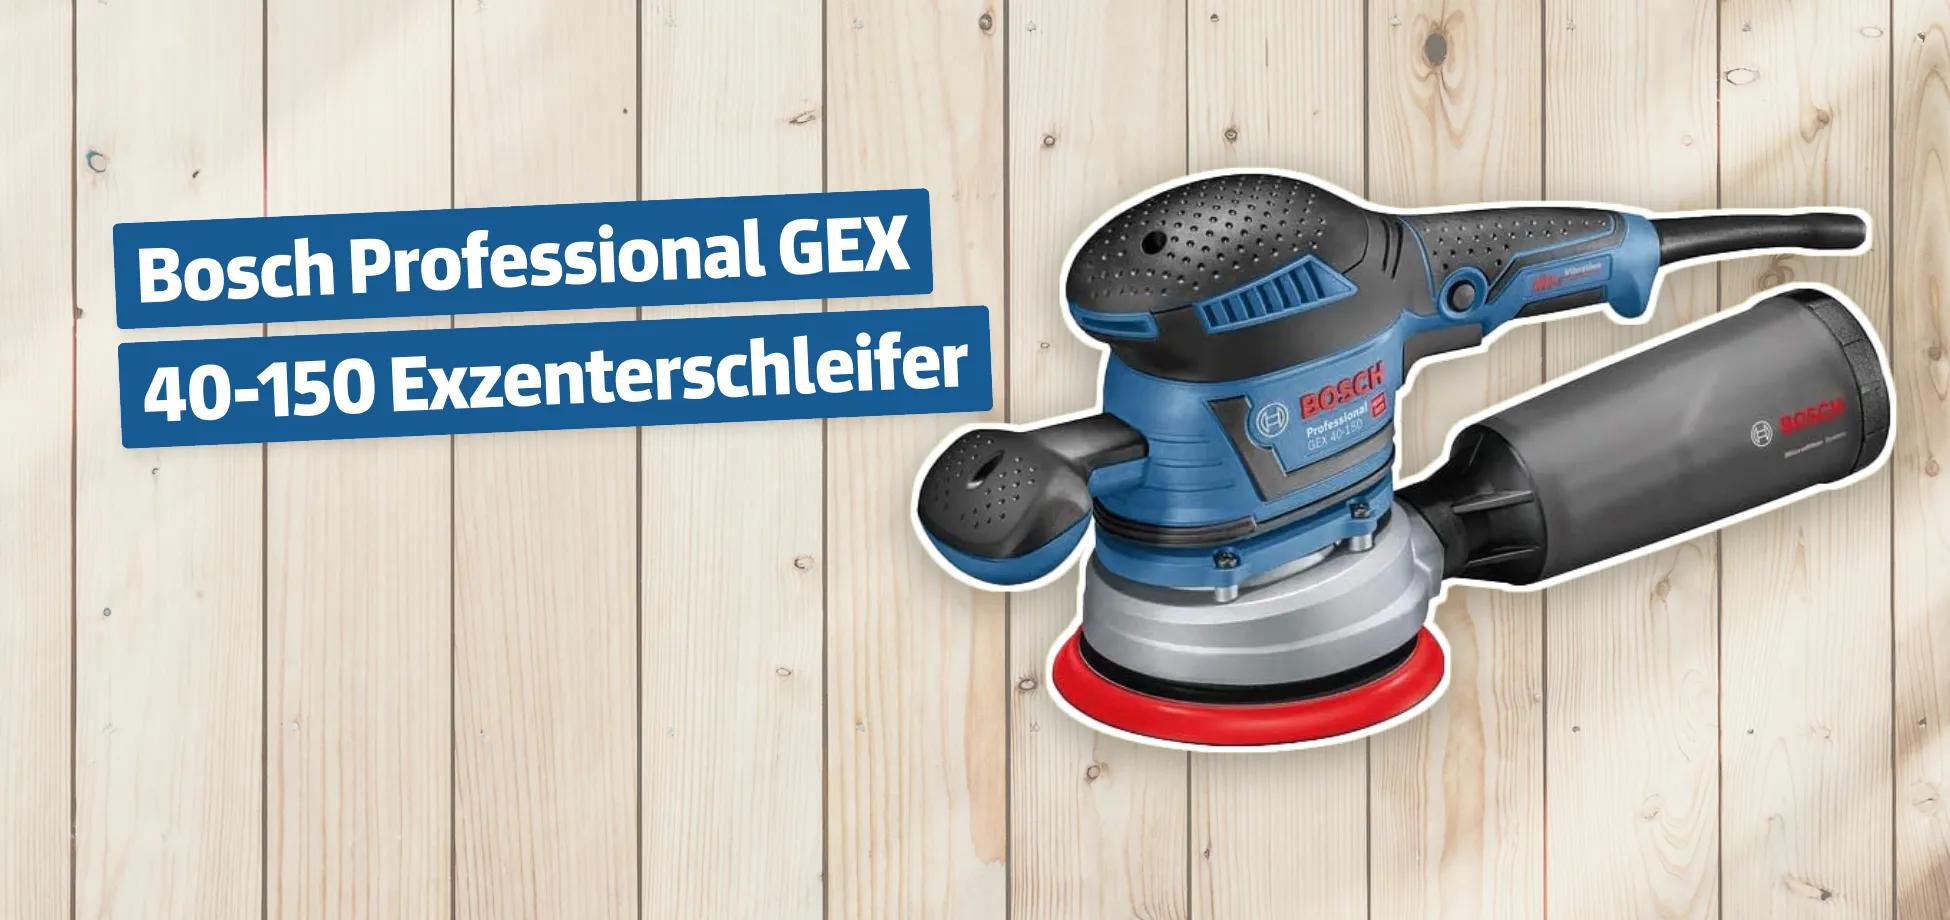 Bosch Professional GEX 40-150 Exzenterschleifer